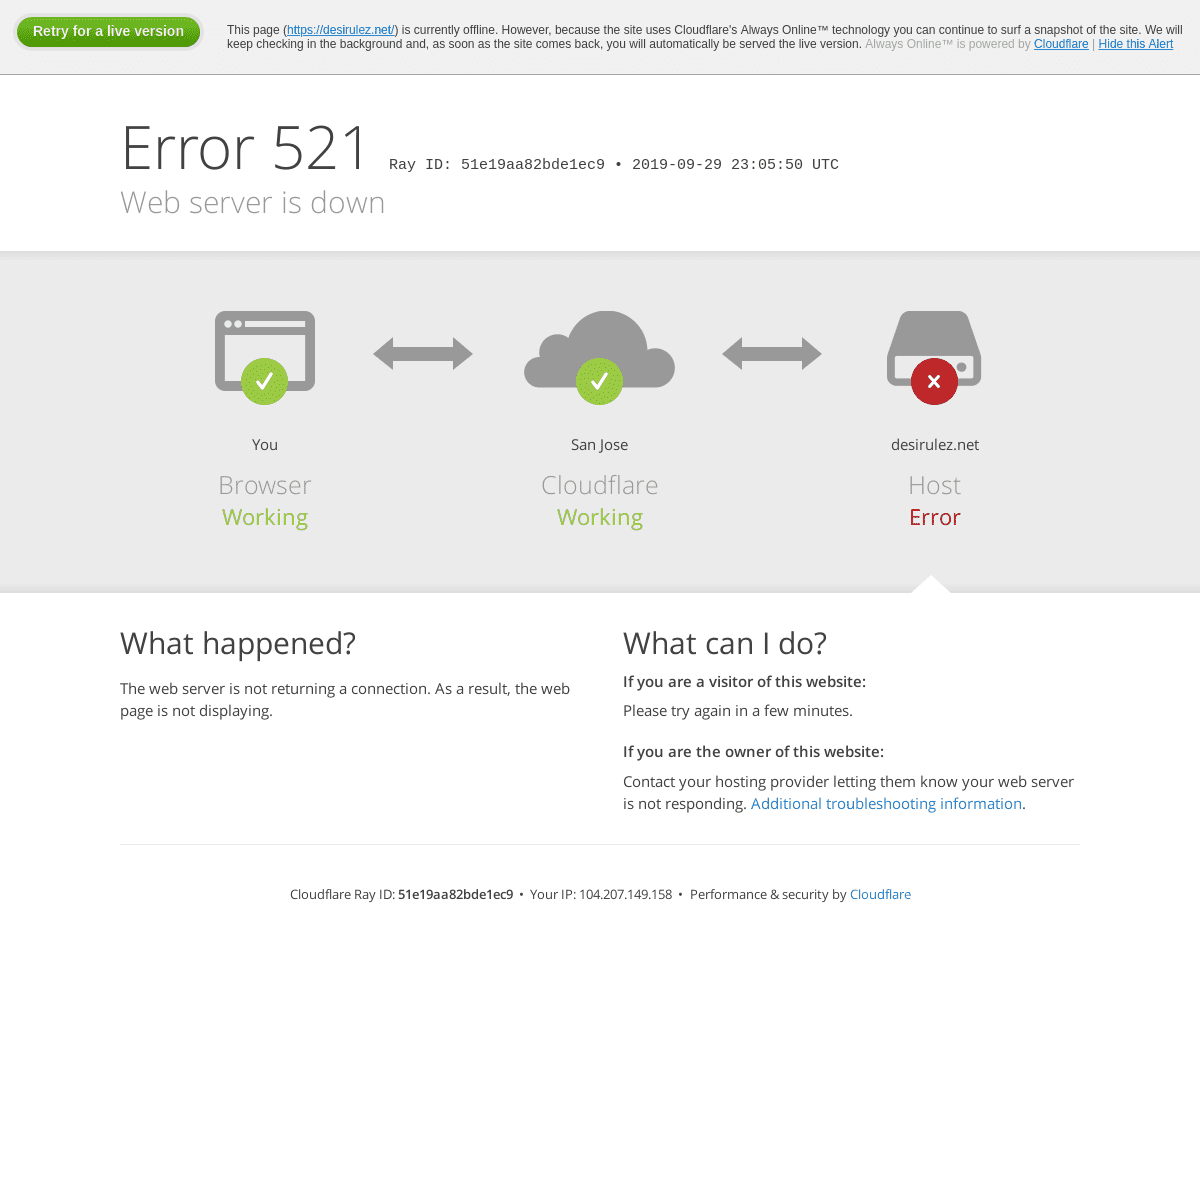 desirulez.net | 521: Web server is down